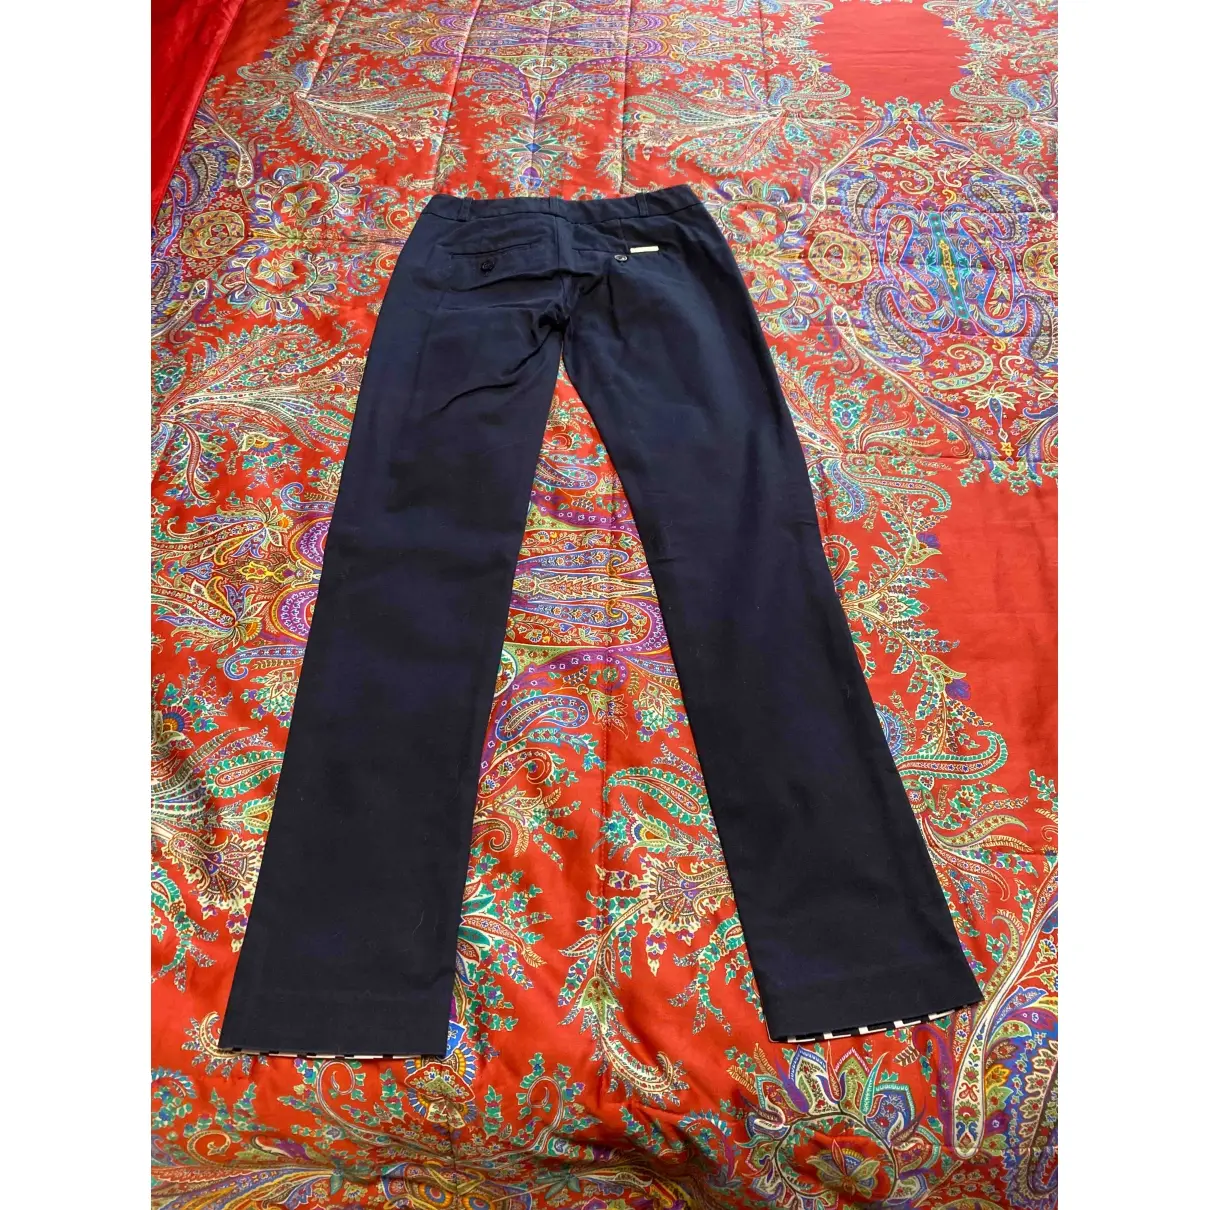 Michael Kors Straight pants for sale